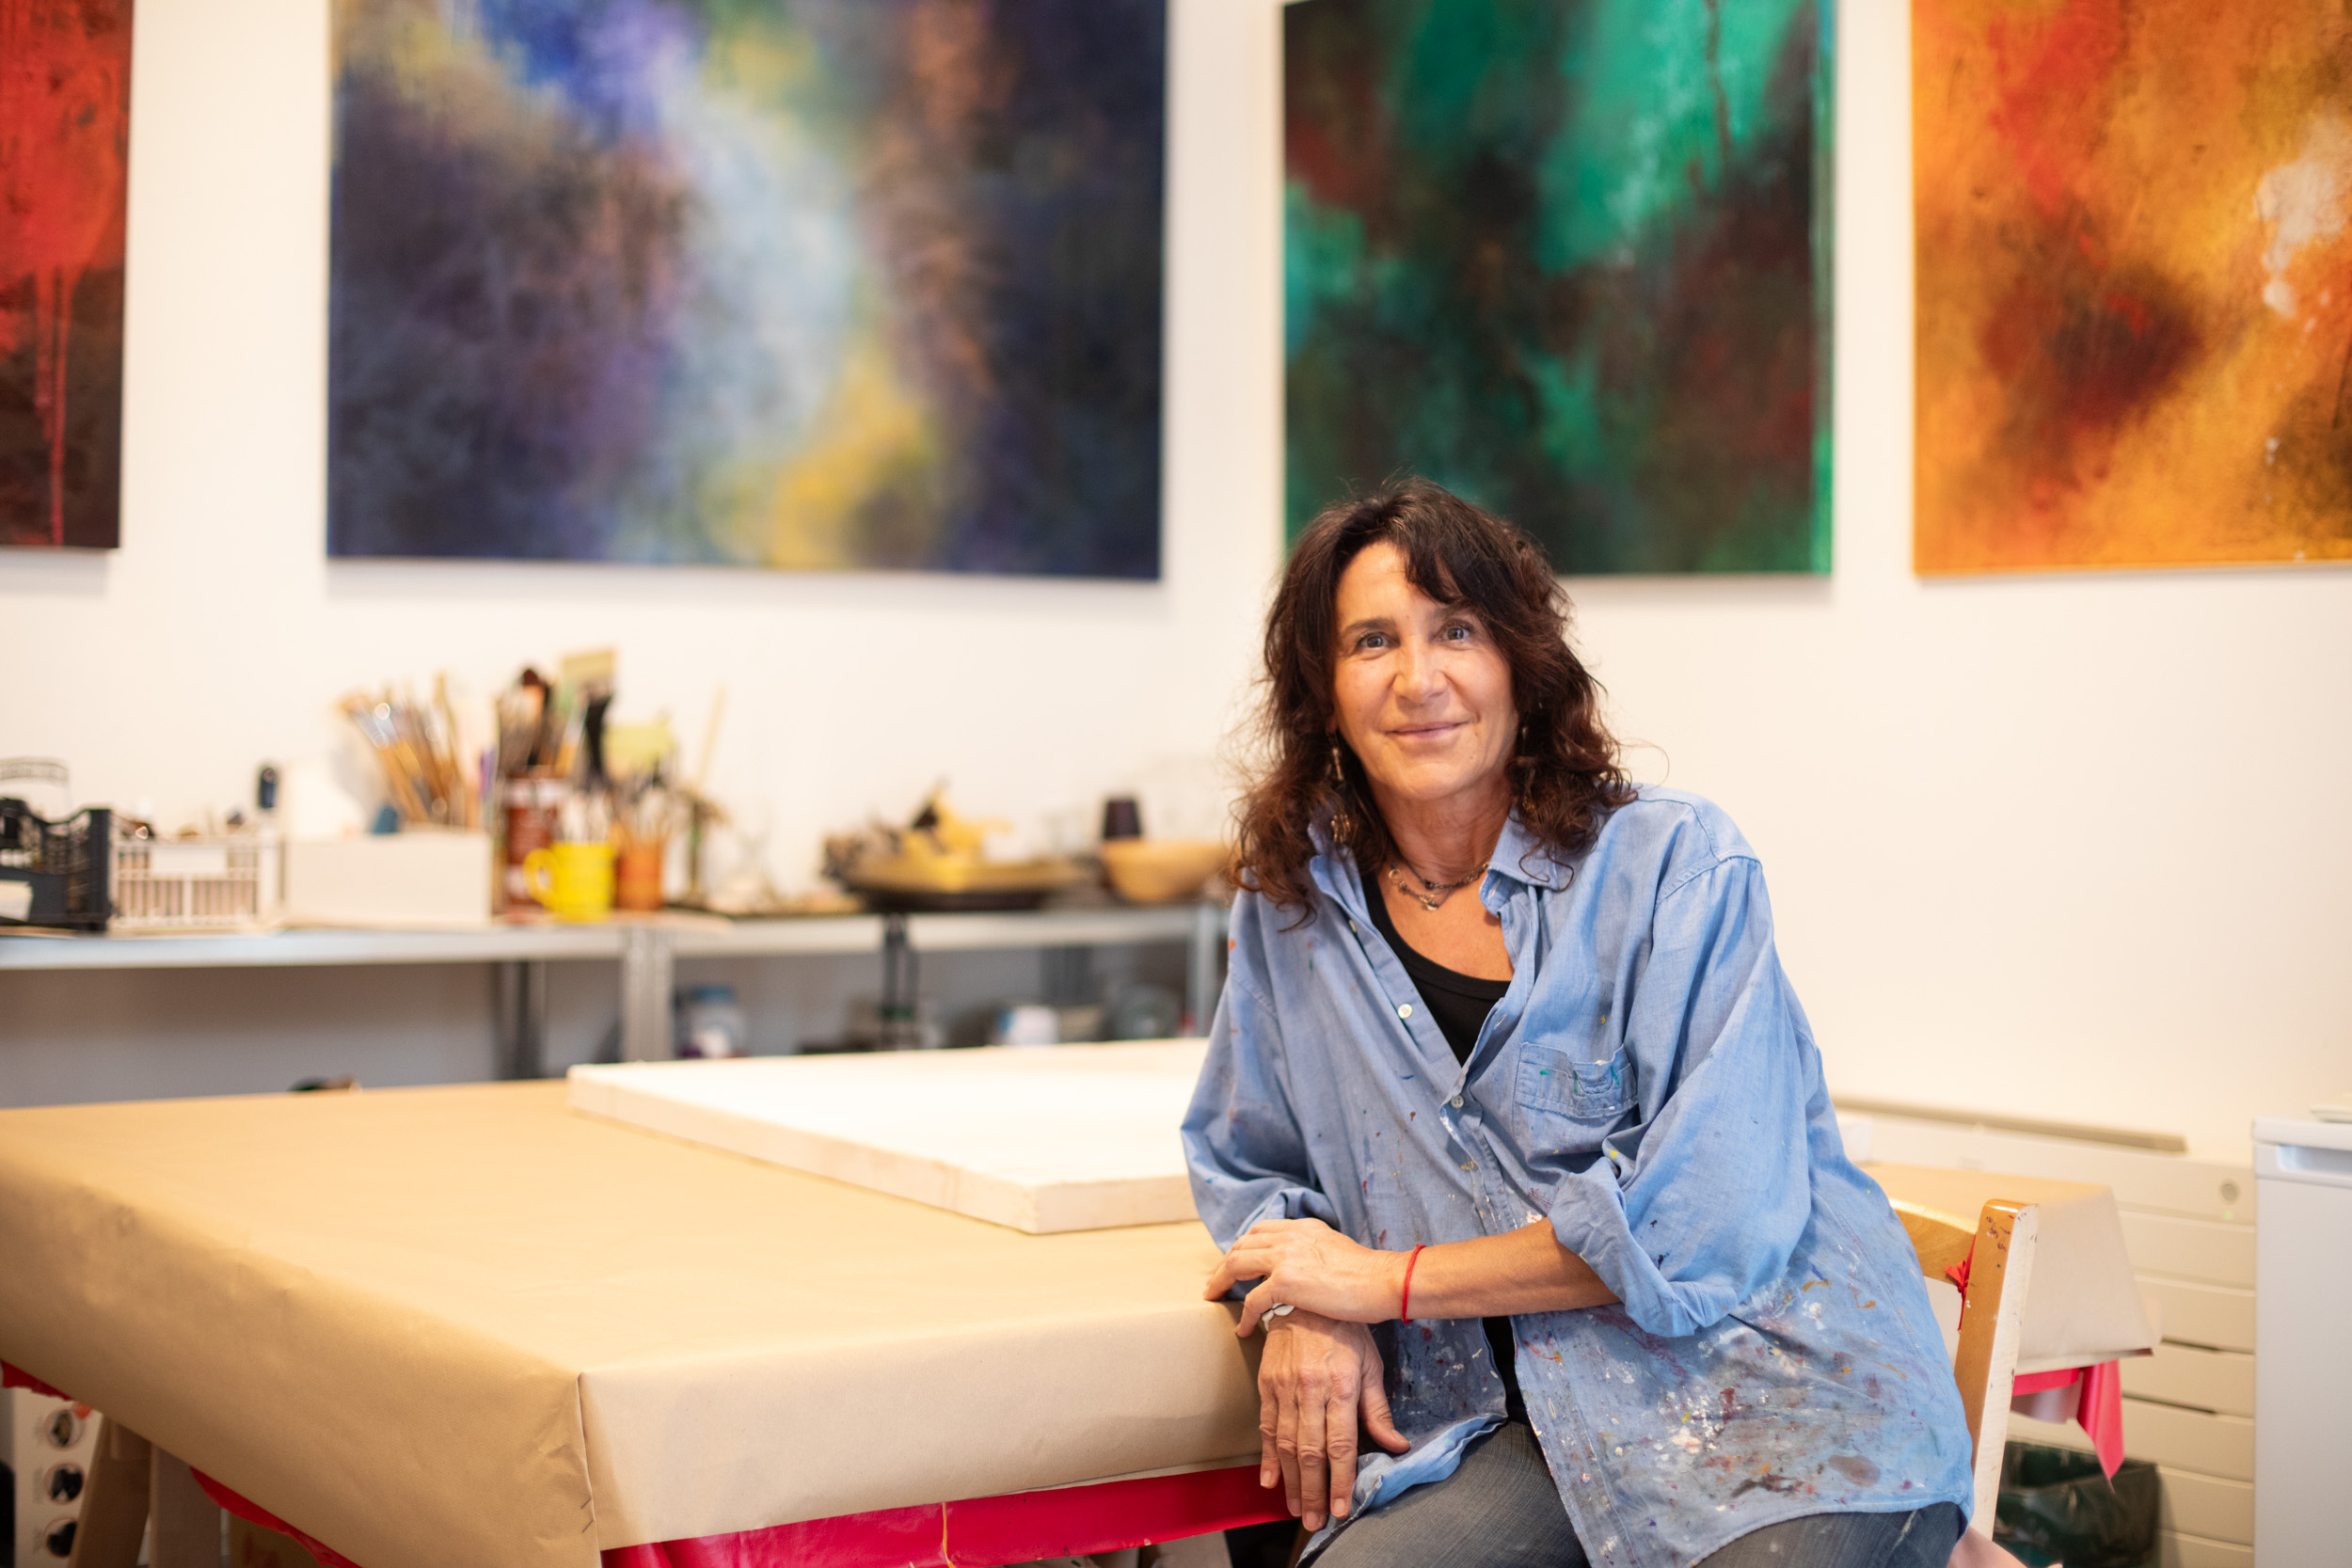 Chiara Coltro nel suo atelier. Foto: Massimo Pistore